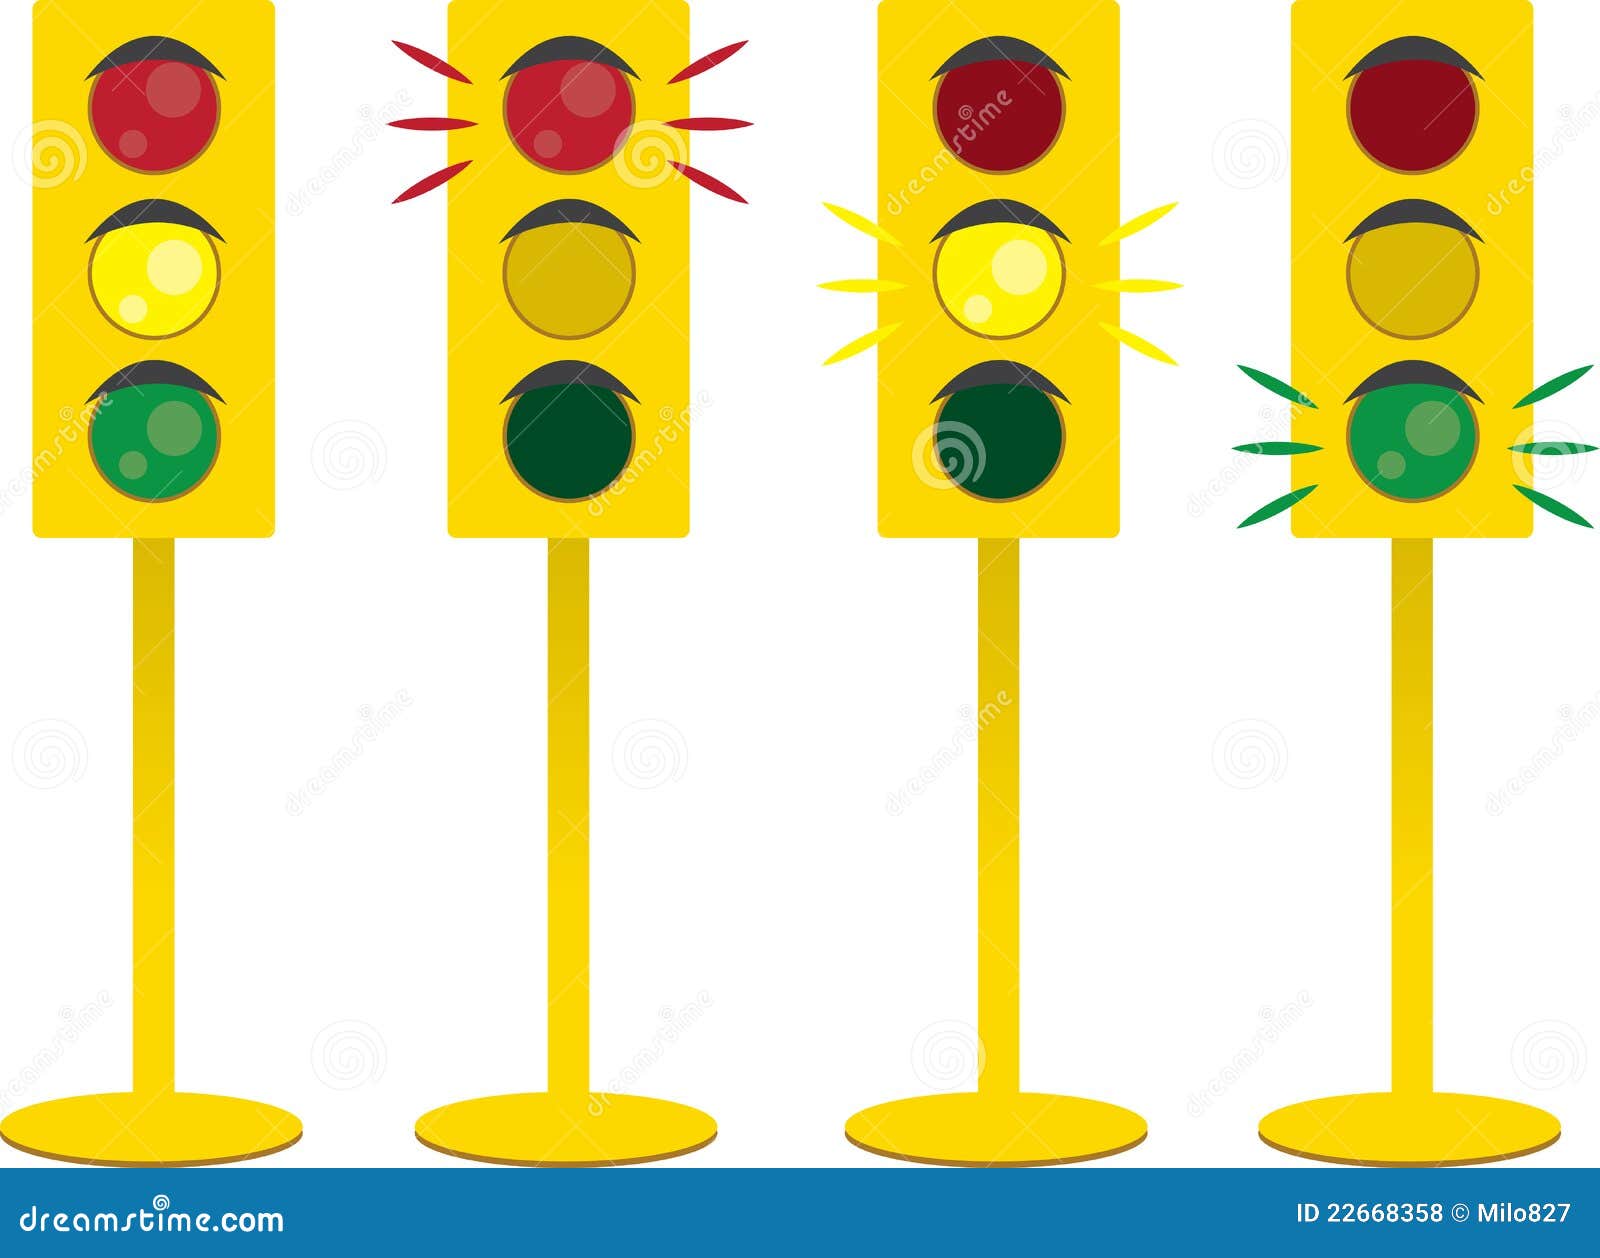 Traffic Light stock vector. Illustration of light, symbol - 22668358